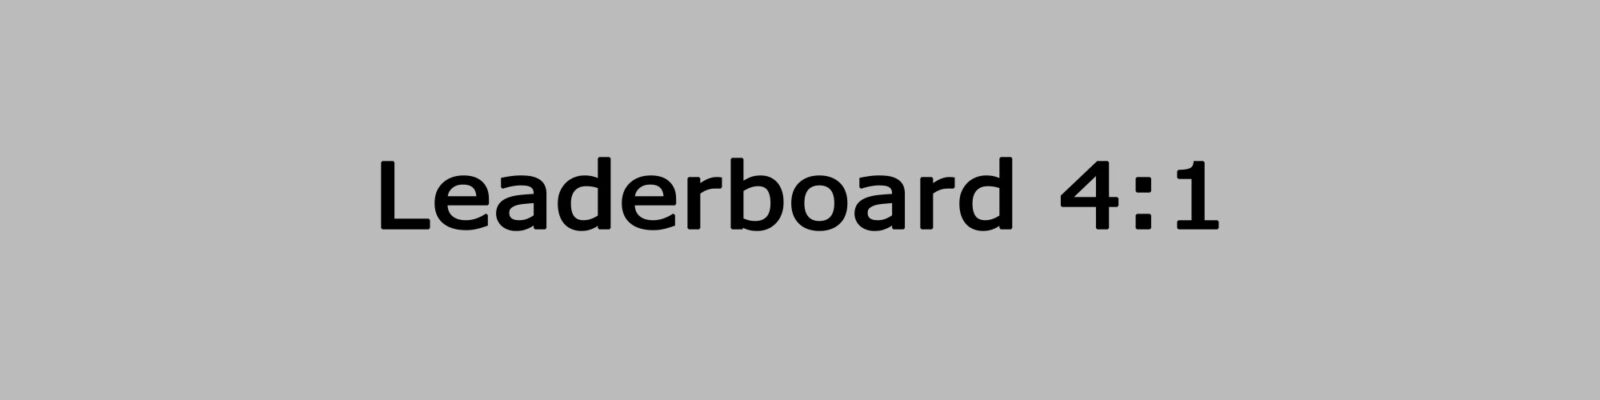 Leaderboard 4:1